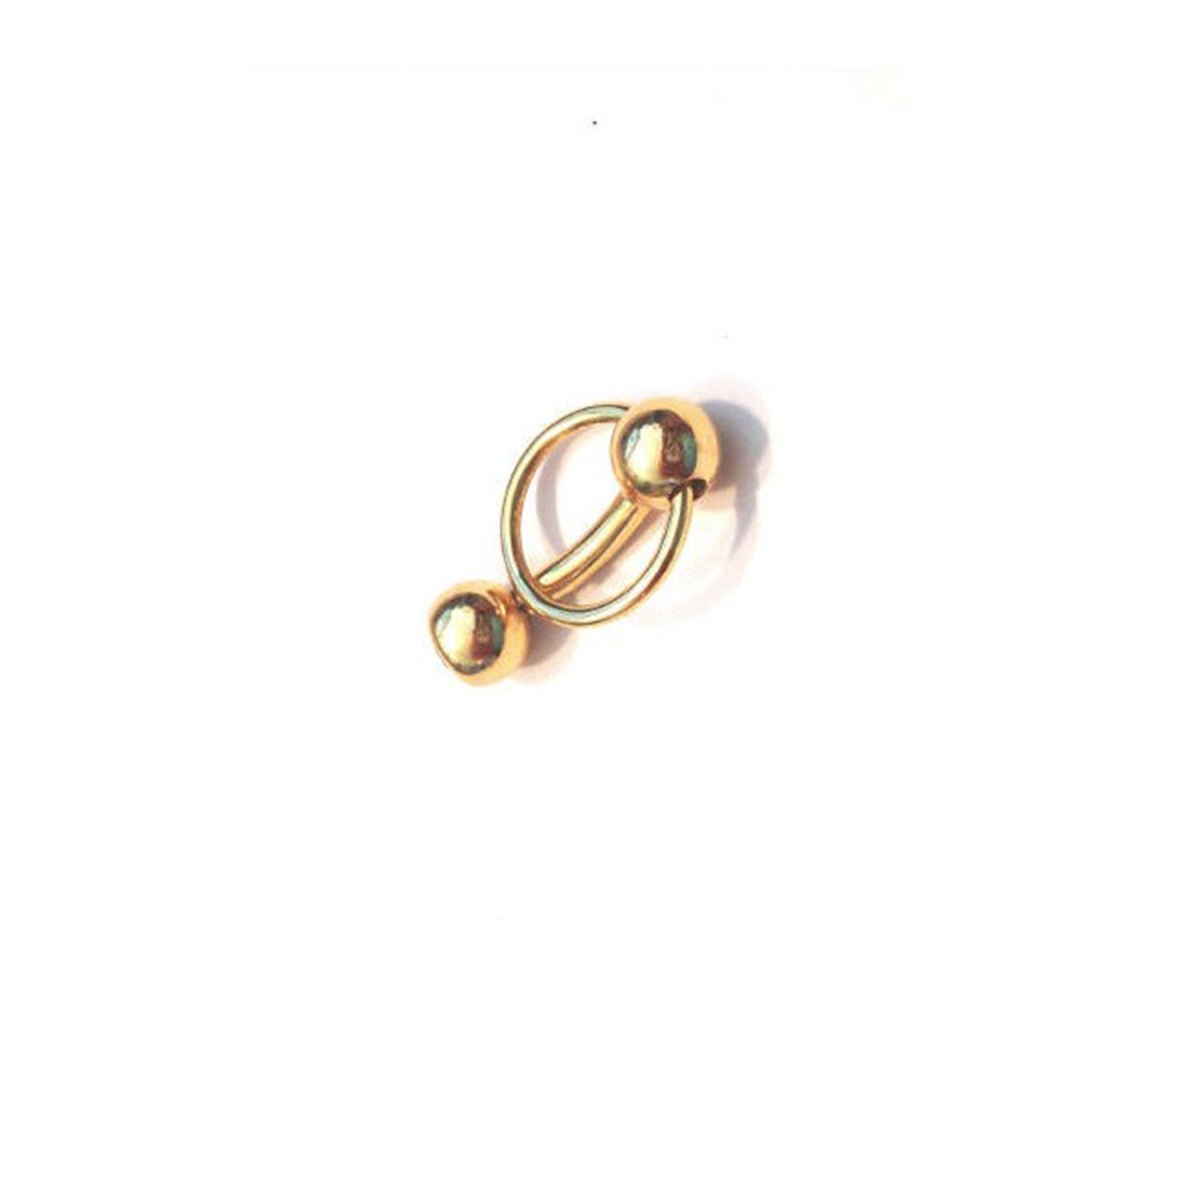 Goldener Intimpiercing Ring / BCR für Klitorisvorhaut Piercing Ring der O  in 18 kt Gelbgold, Weiß- oder Rosé Gold